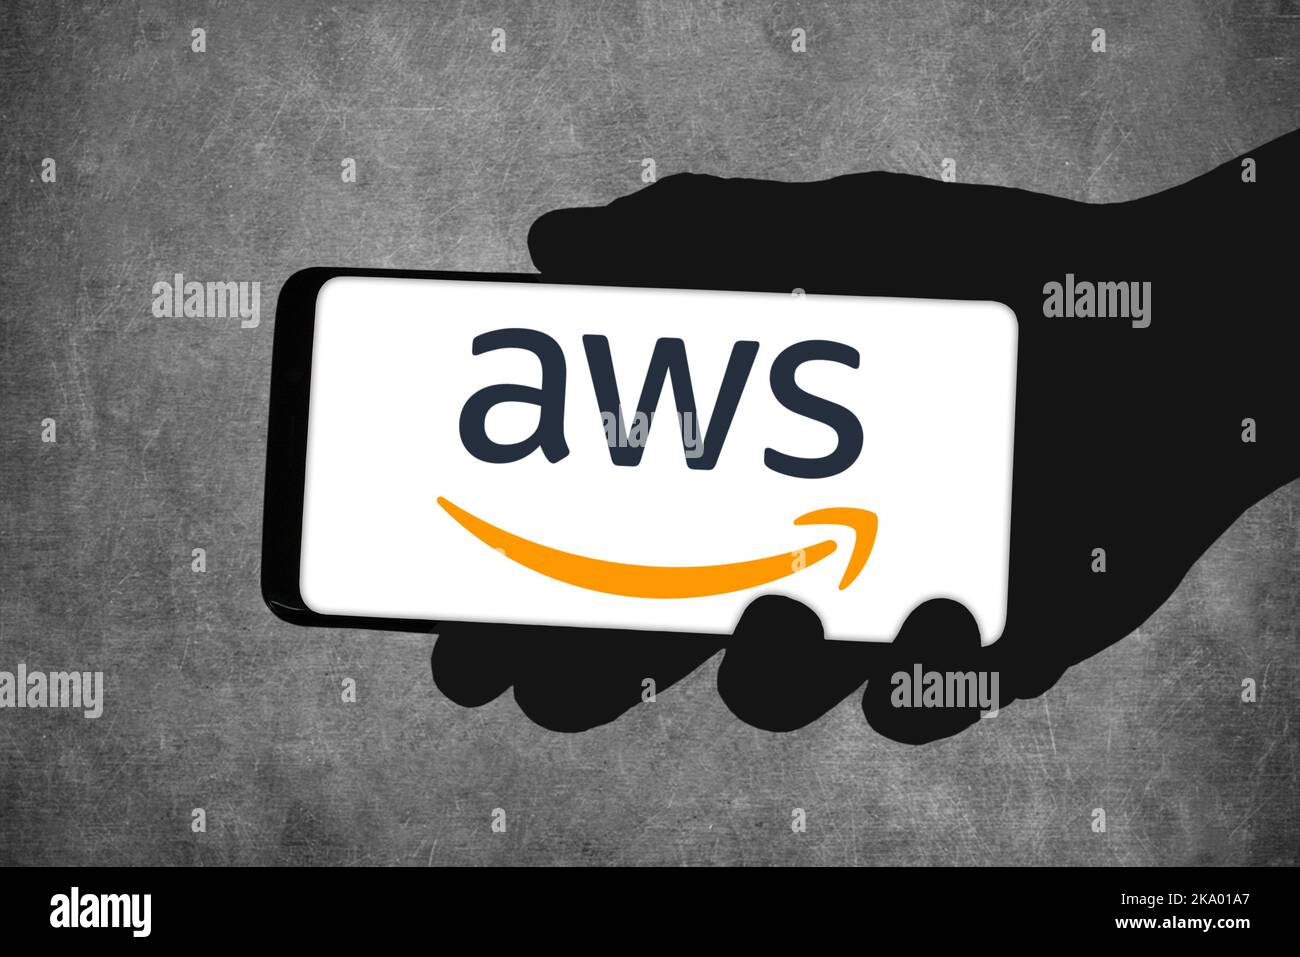 AWS - Amazon Web Services Stock Photo